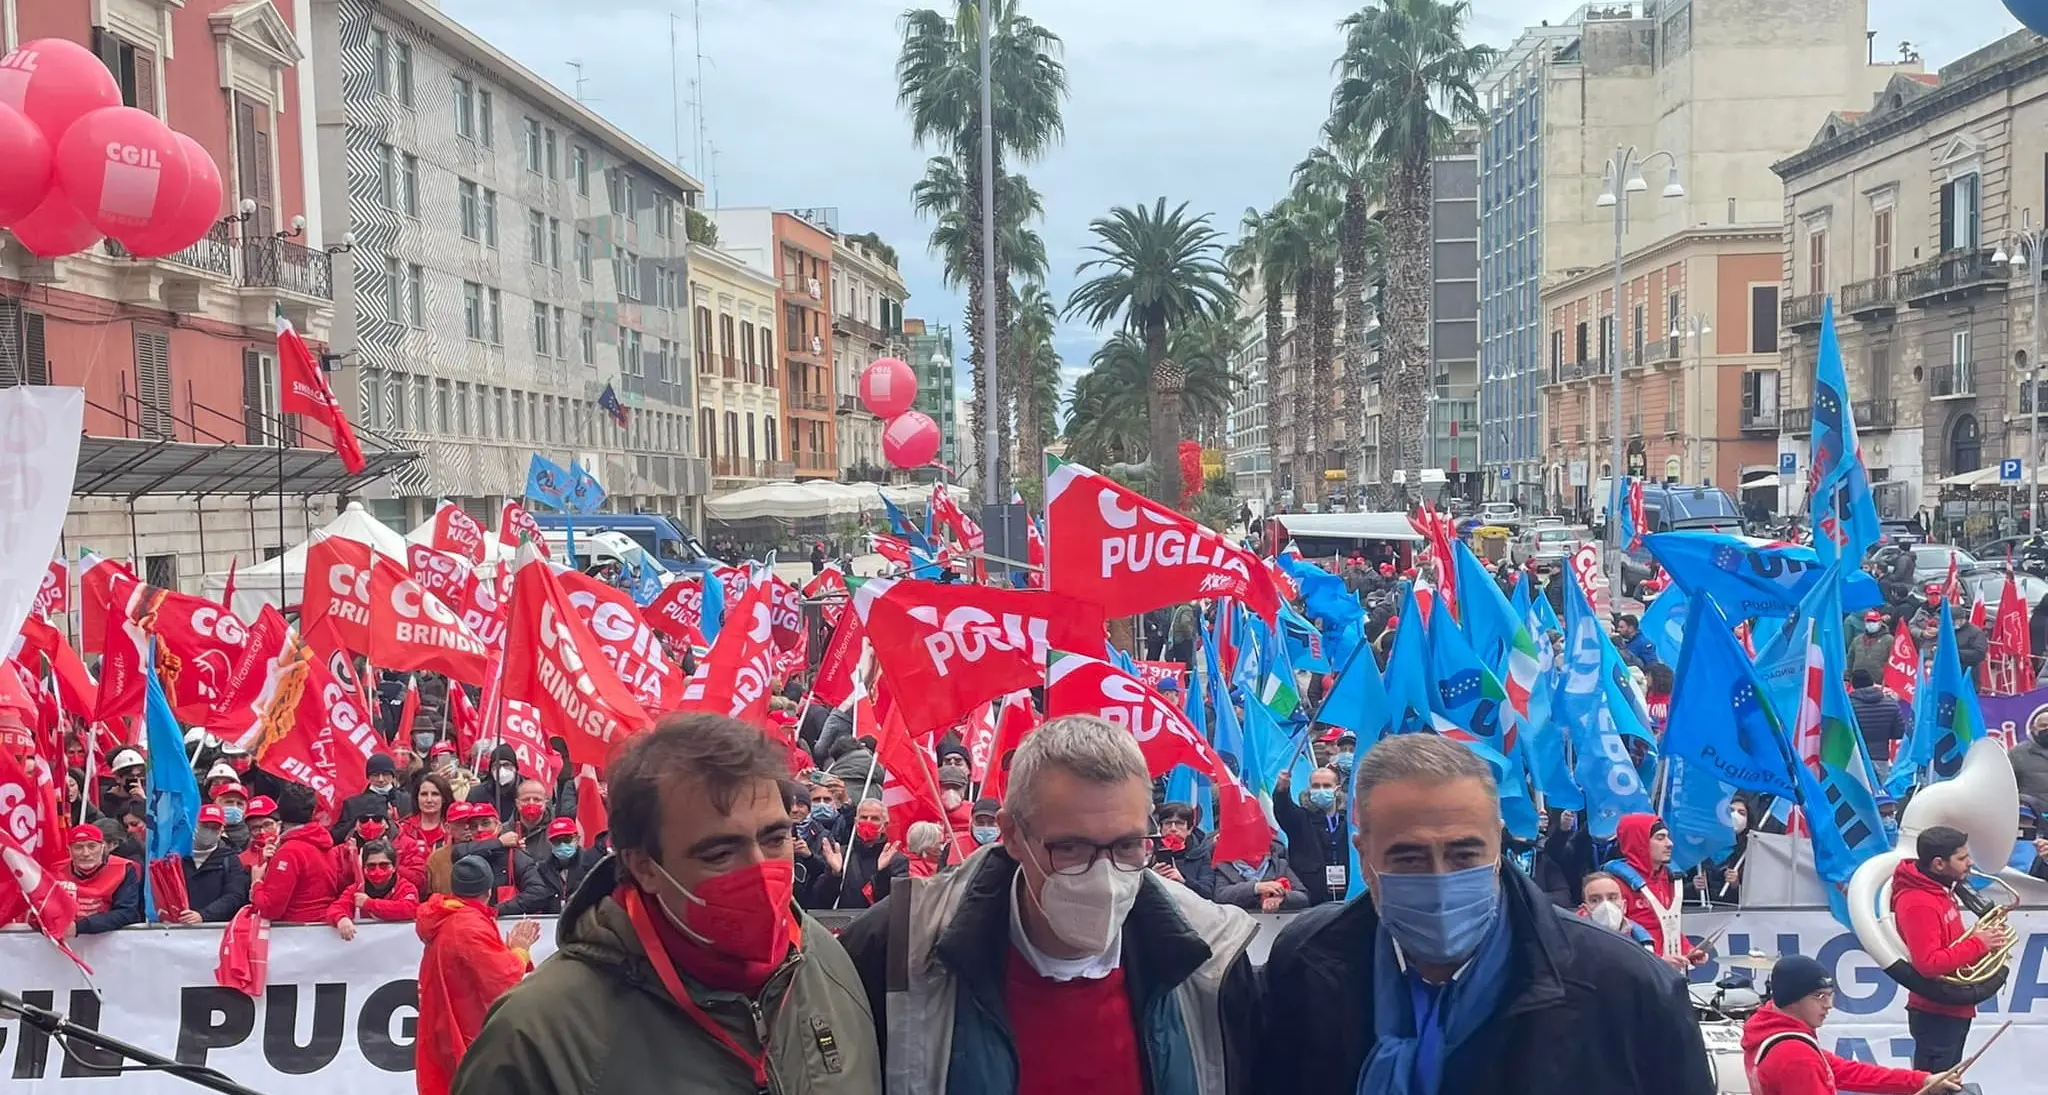 Sabato 11 dicembre Maurizio Landini in piazza a Bari con CGIL e UIL contro una manovra economica ingiusta e inadeguata. Manifestazione regionale anche a Lamezia Terme (CZ)